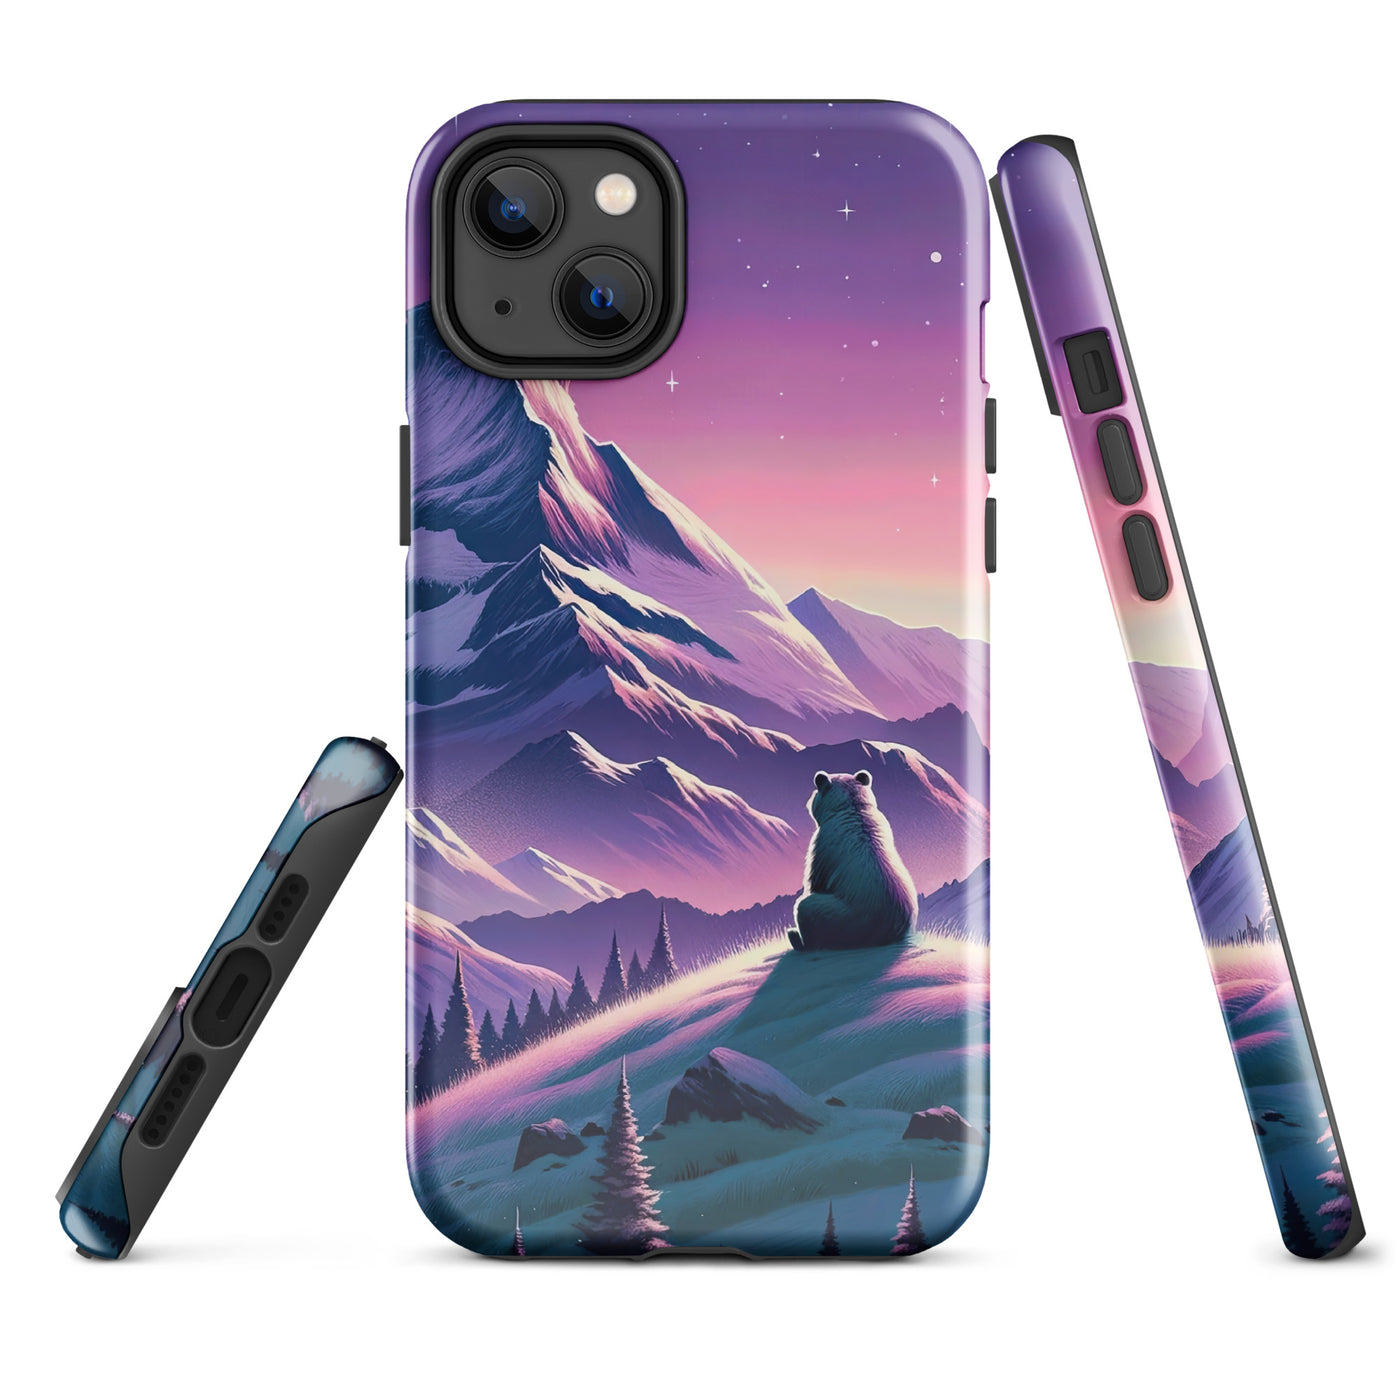 Bezaubernder Alpenabend mit Bär, lavendel-rosafarbener Himmel (AN) - iPhone Schutzhülle (robust) xxx yyy zzz iPhone 14 Plus